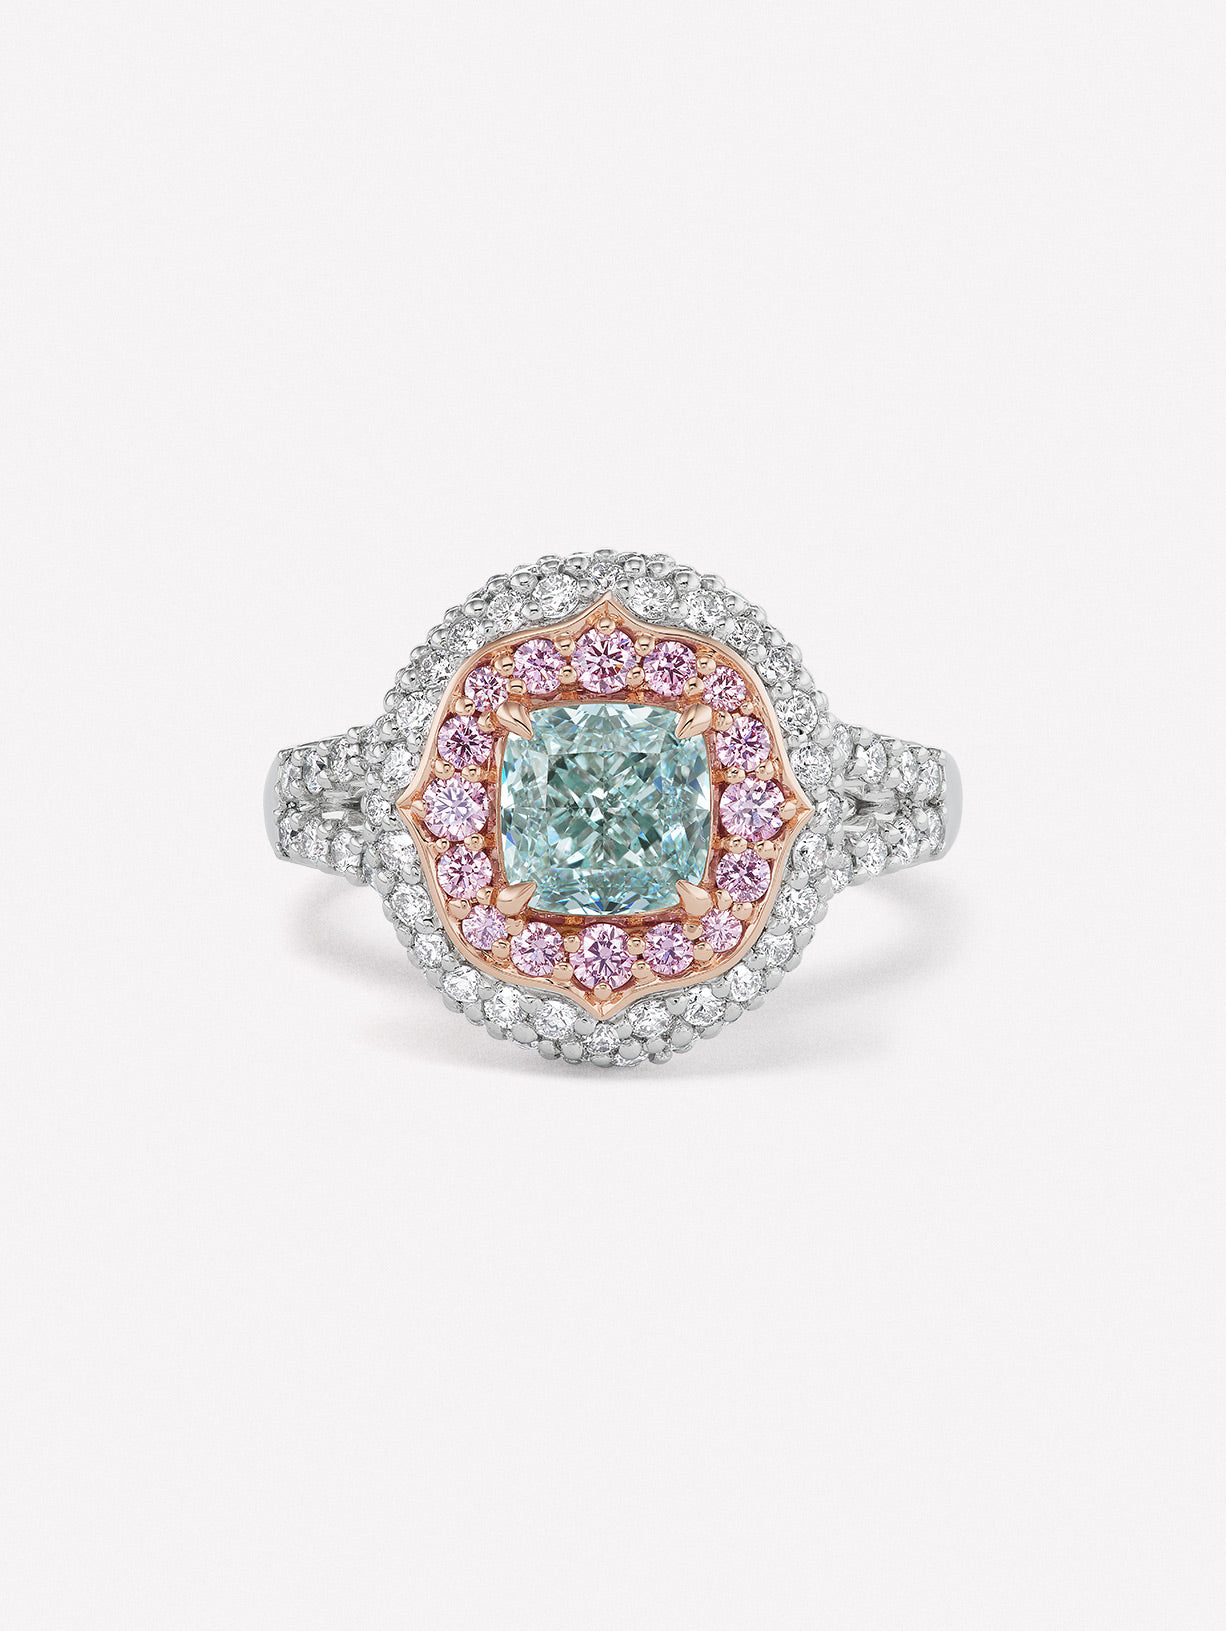 Argyle Pink™ Diamond and Blue Diamond Ring - Pink Diamonds, J FINE - J Fine, Rings - Pink Diamond Jewelry, argyle-pink™-diamond-and-blue-diamond-ring-by-j-fine - Argyle Pink Diamonds